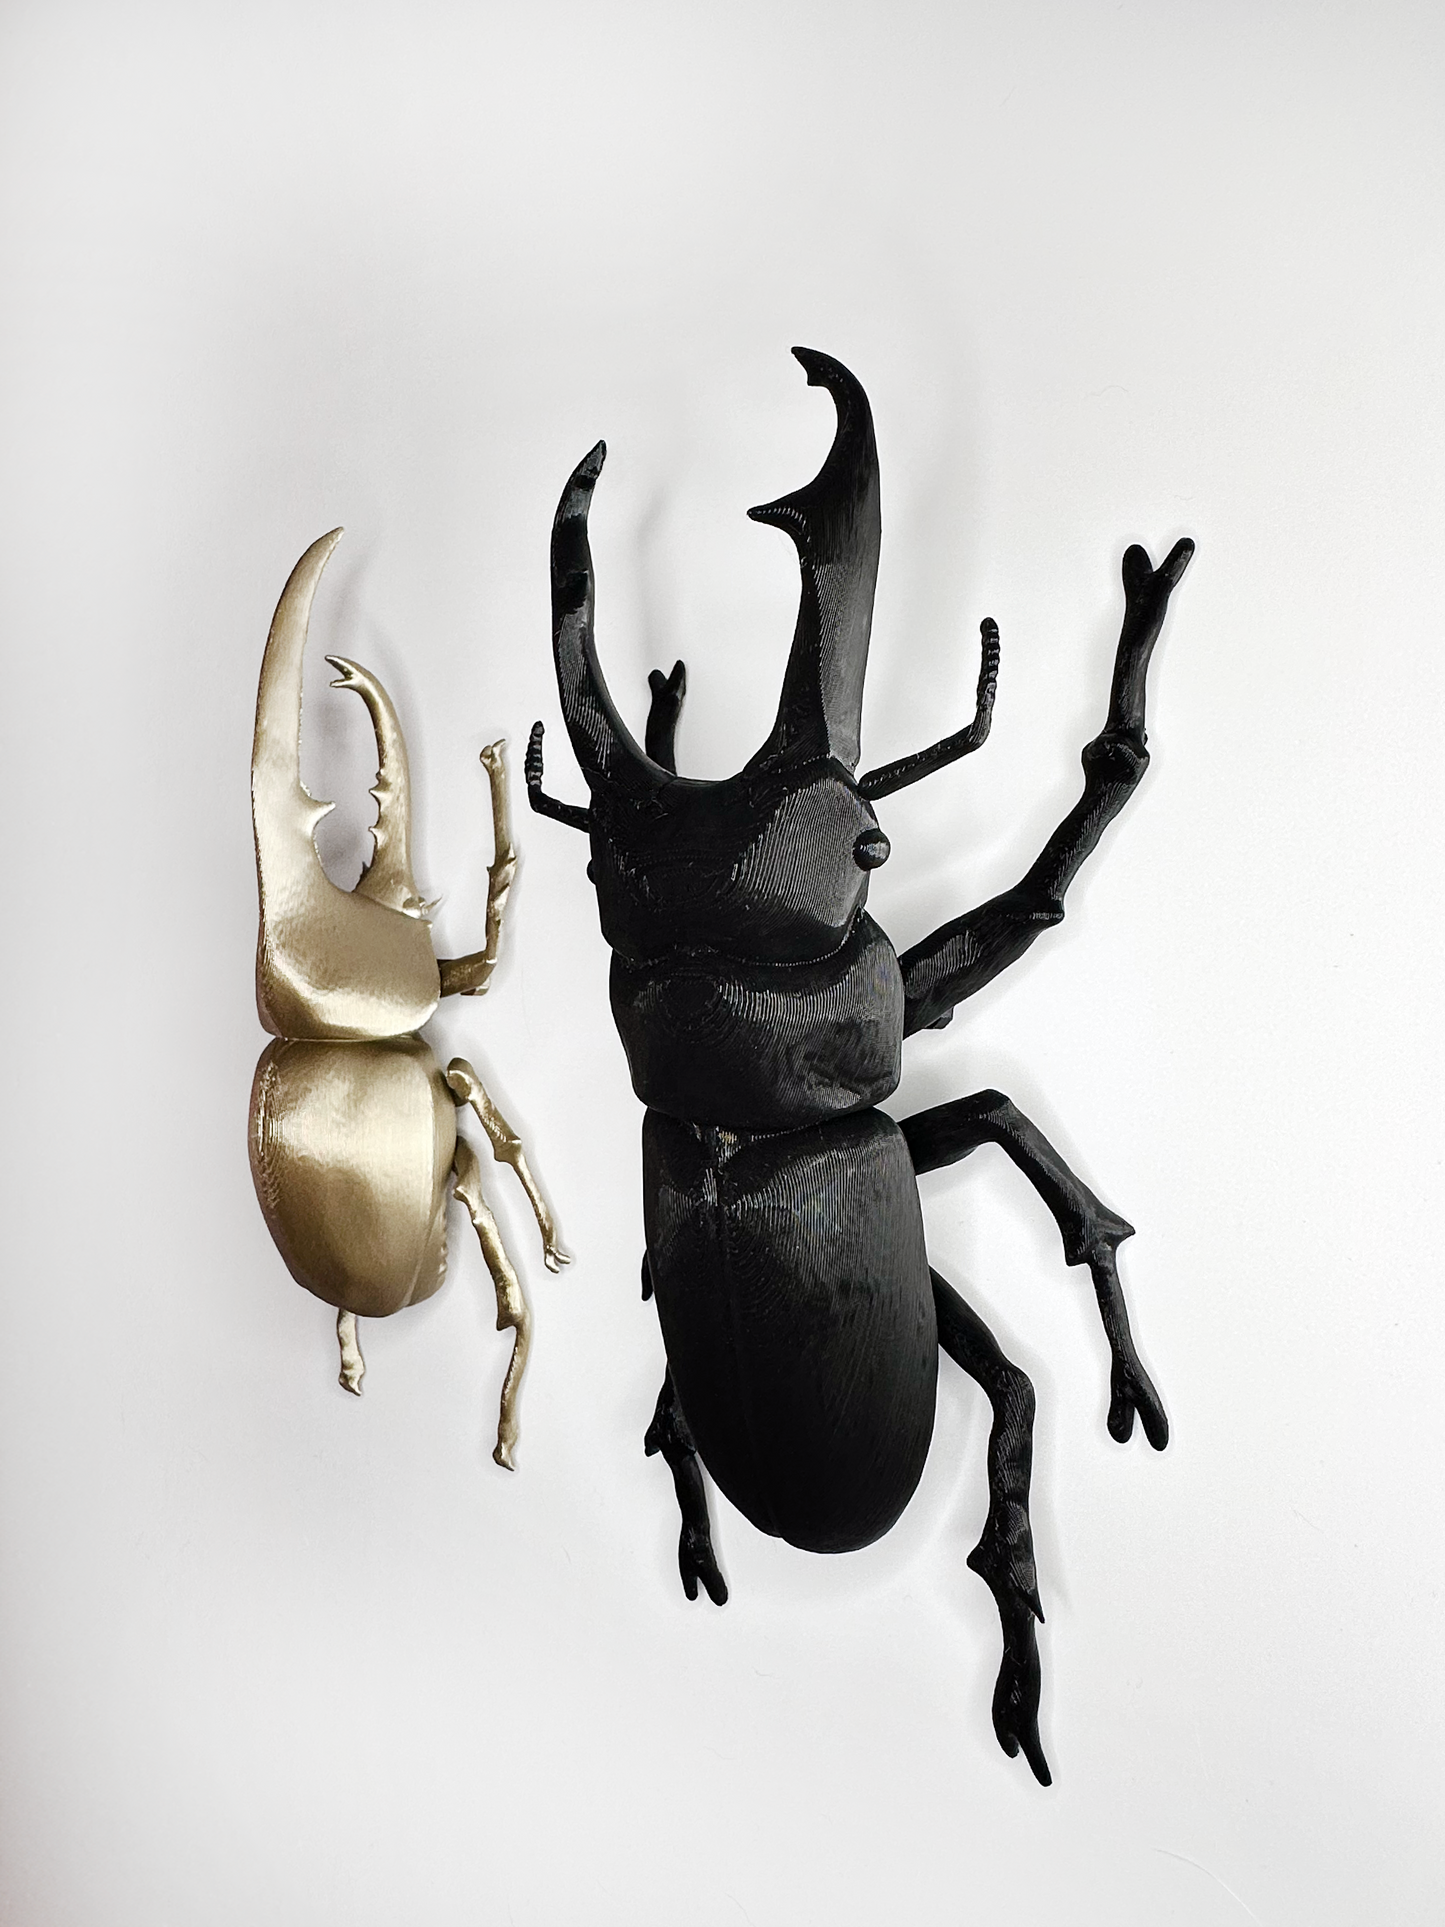 Giant Beetles